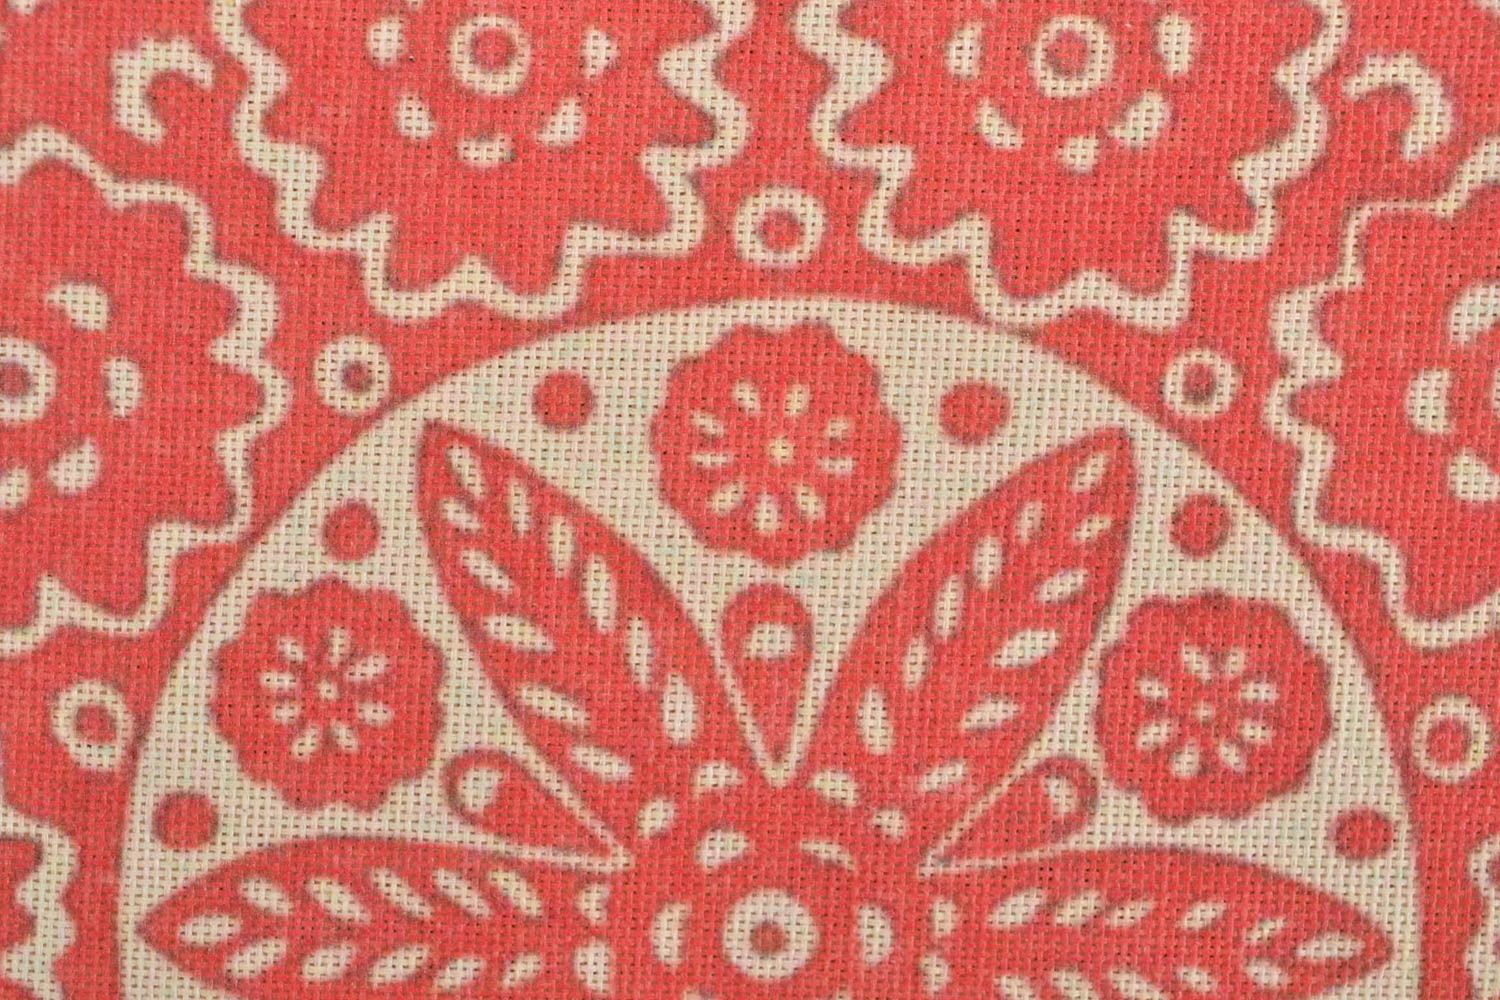 Текстильная сумка с орнаментом эко аксессуар ручной работы принтованная красная фото 5